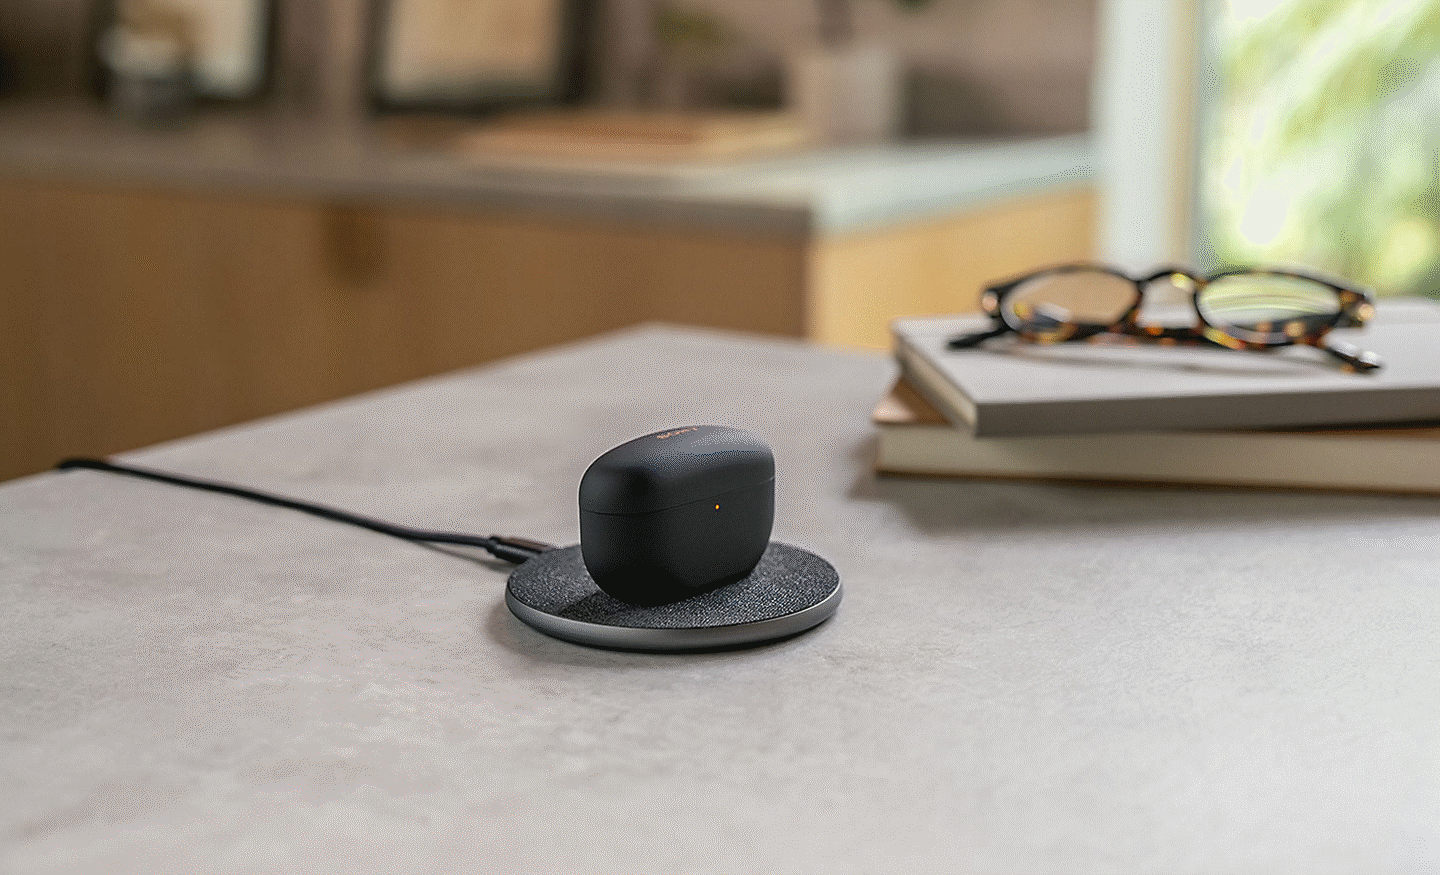 Bild der WF-1000MX5 Kopfhörer auf einer kabellosen Ladestation auf einem Schreibtisch